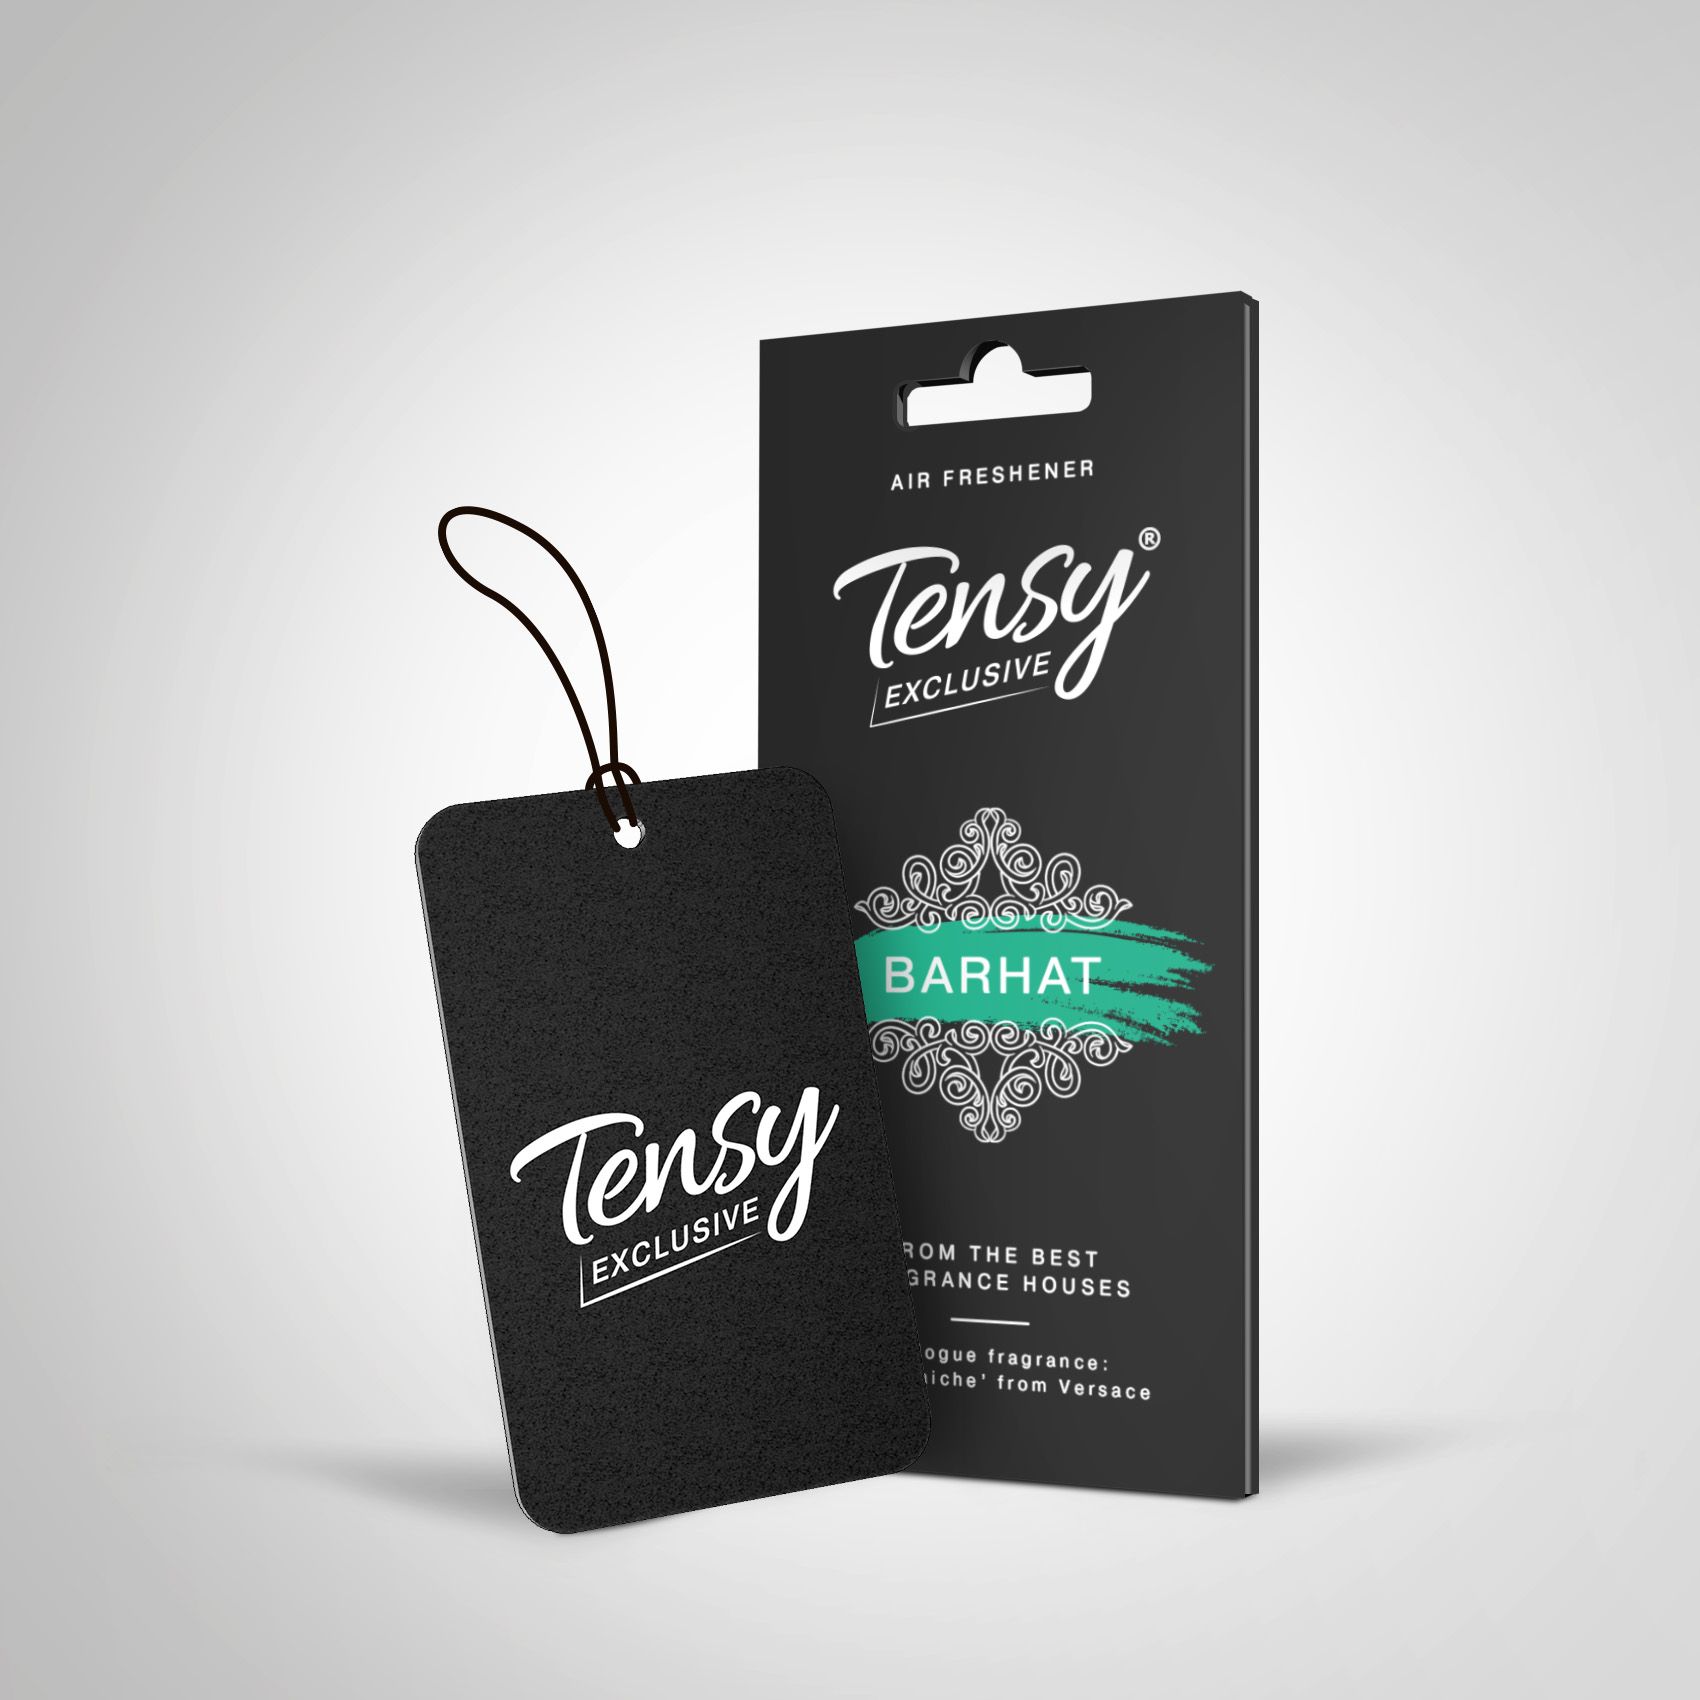 "Освежитель (ароматизатор) подвесной картон Tensy эксклюзив ""Бархат""" ta25 Tensy